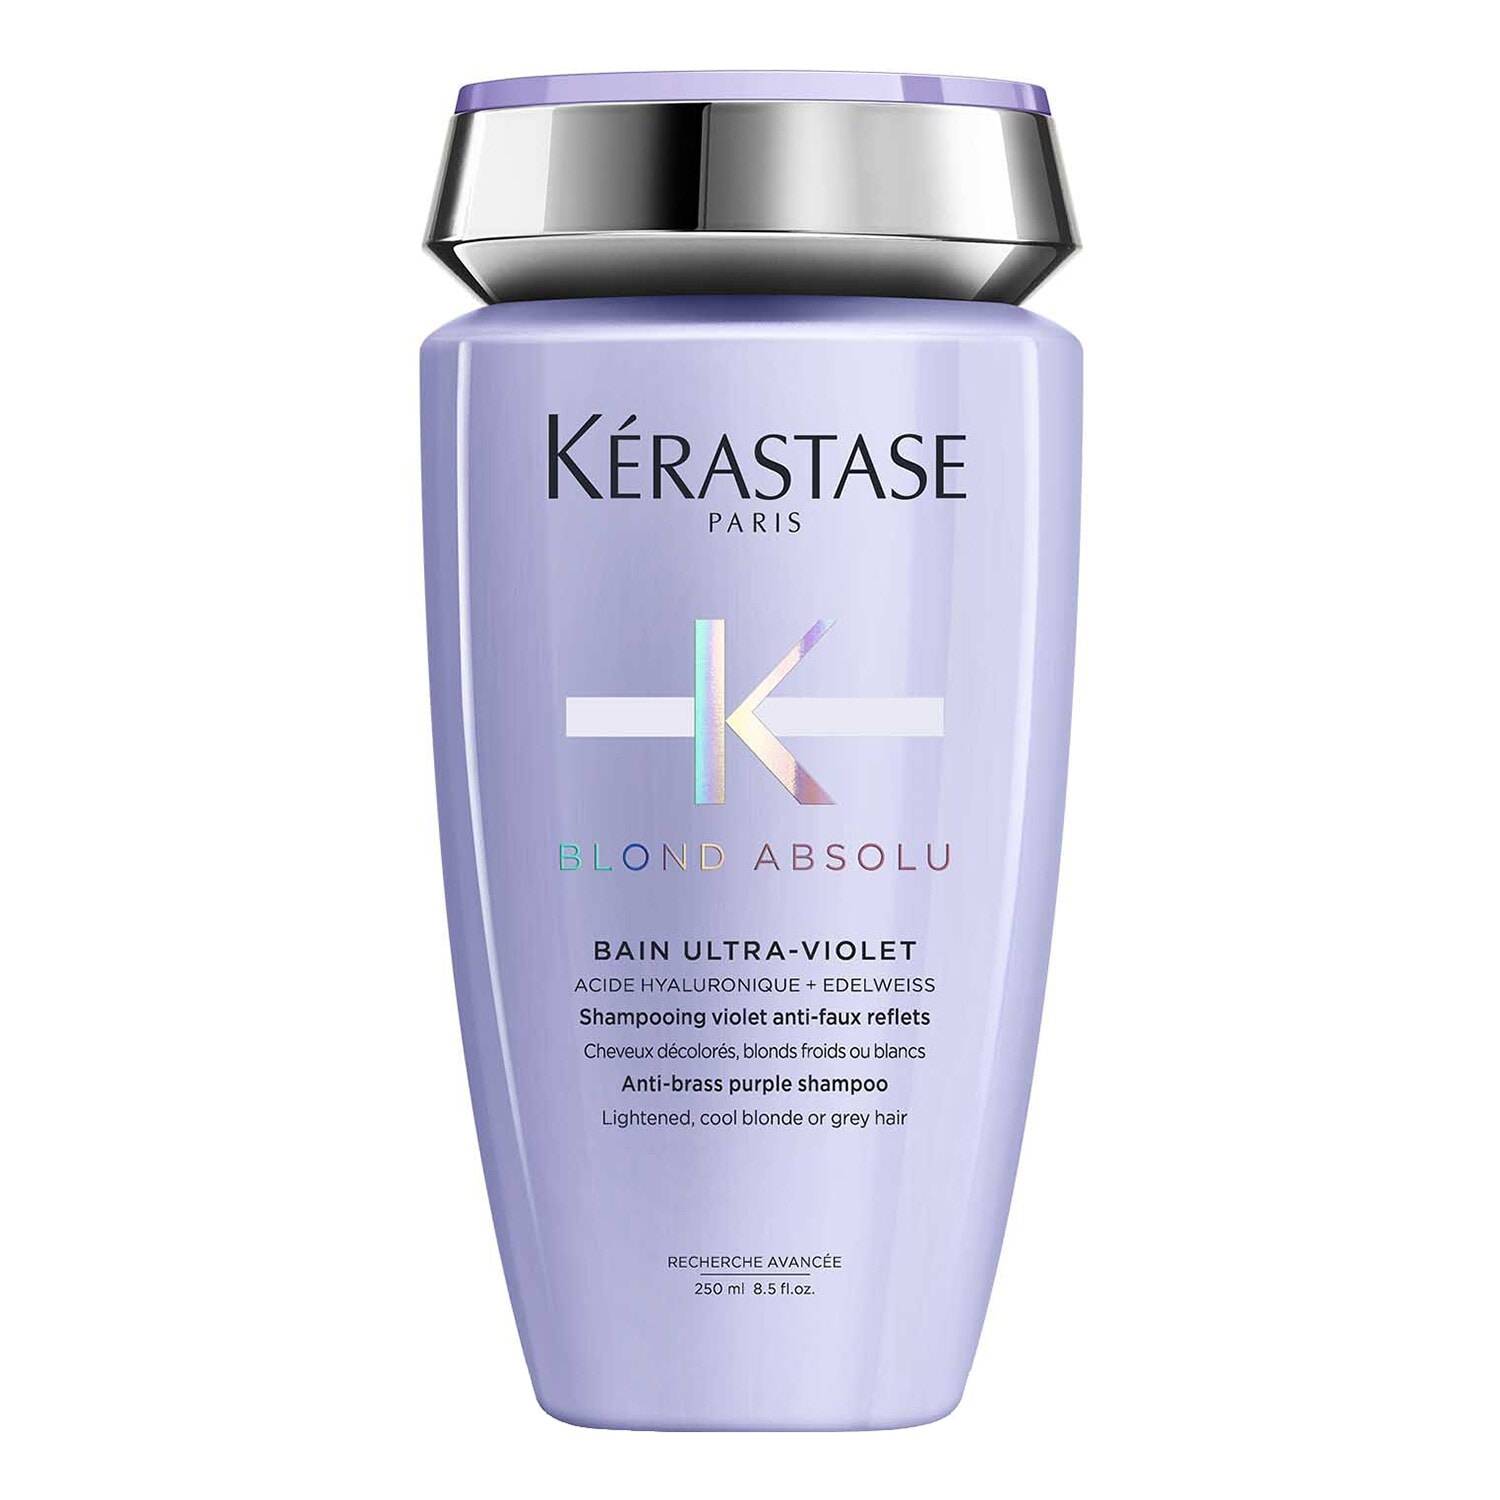 Blond Absolu - Bain Ultra-Violet - Shampoing violet anti-faux reflets - Kérastase